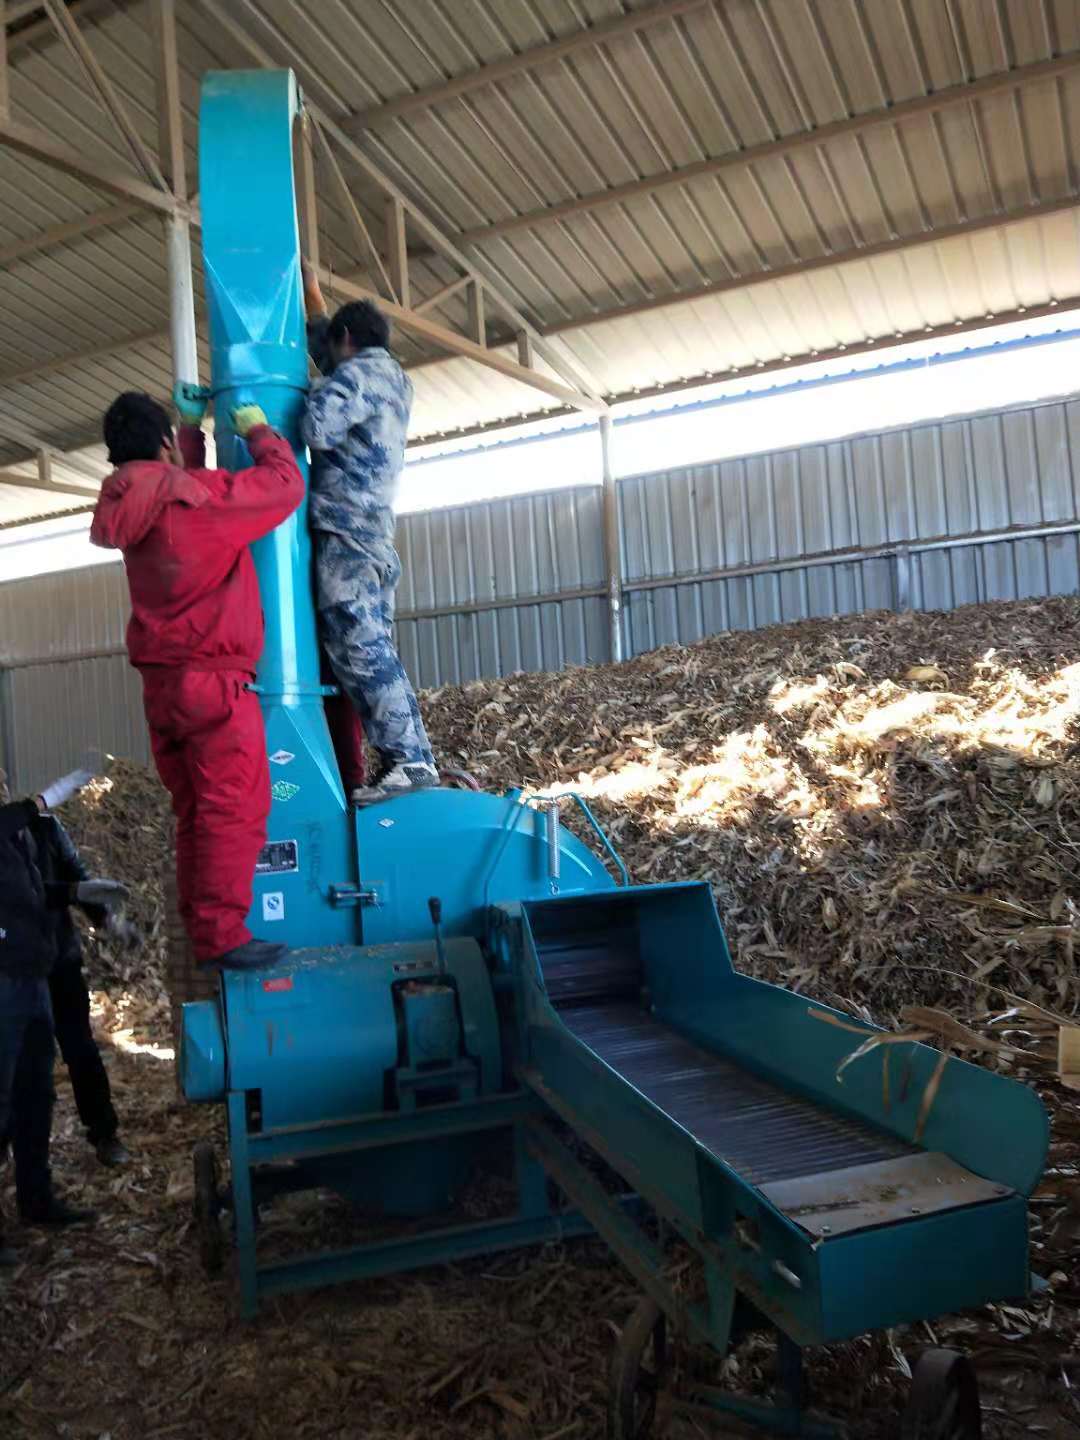 广西柳州10吨新型铡草揉搓机多少钱一台？